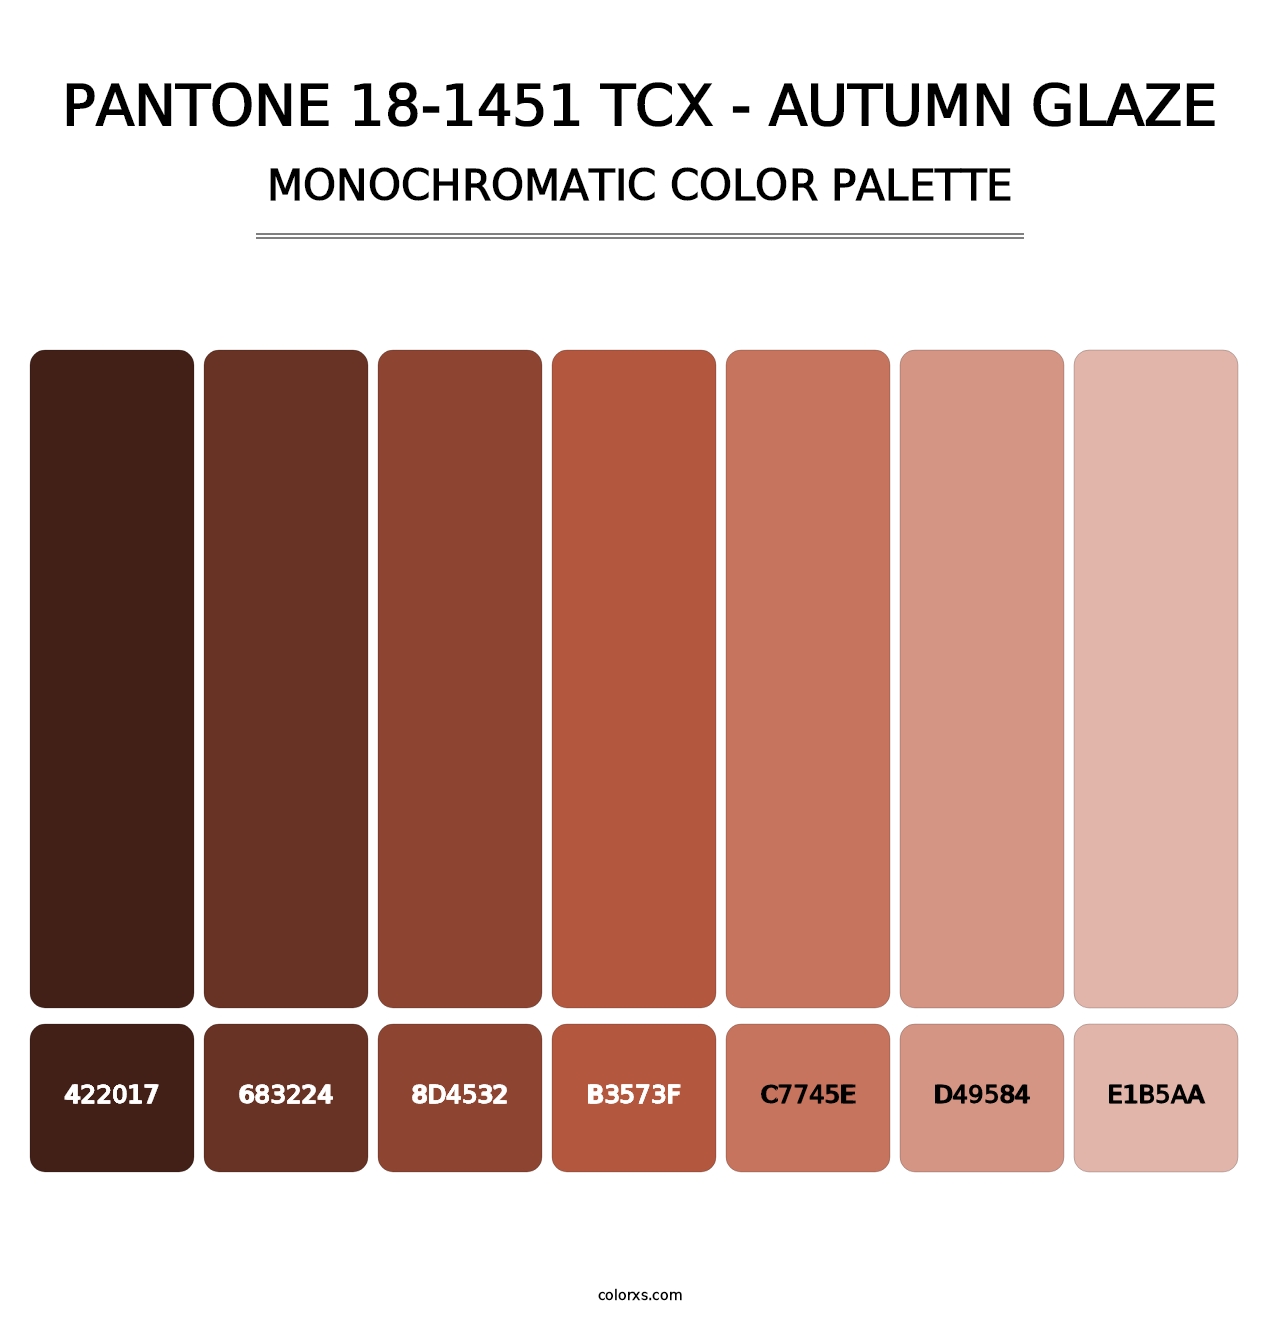 PANTONE 18-1451 TCX - Autumn Glaze - Monochromatic Color Palette